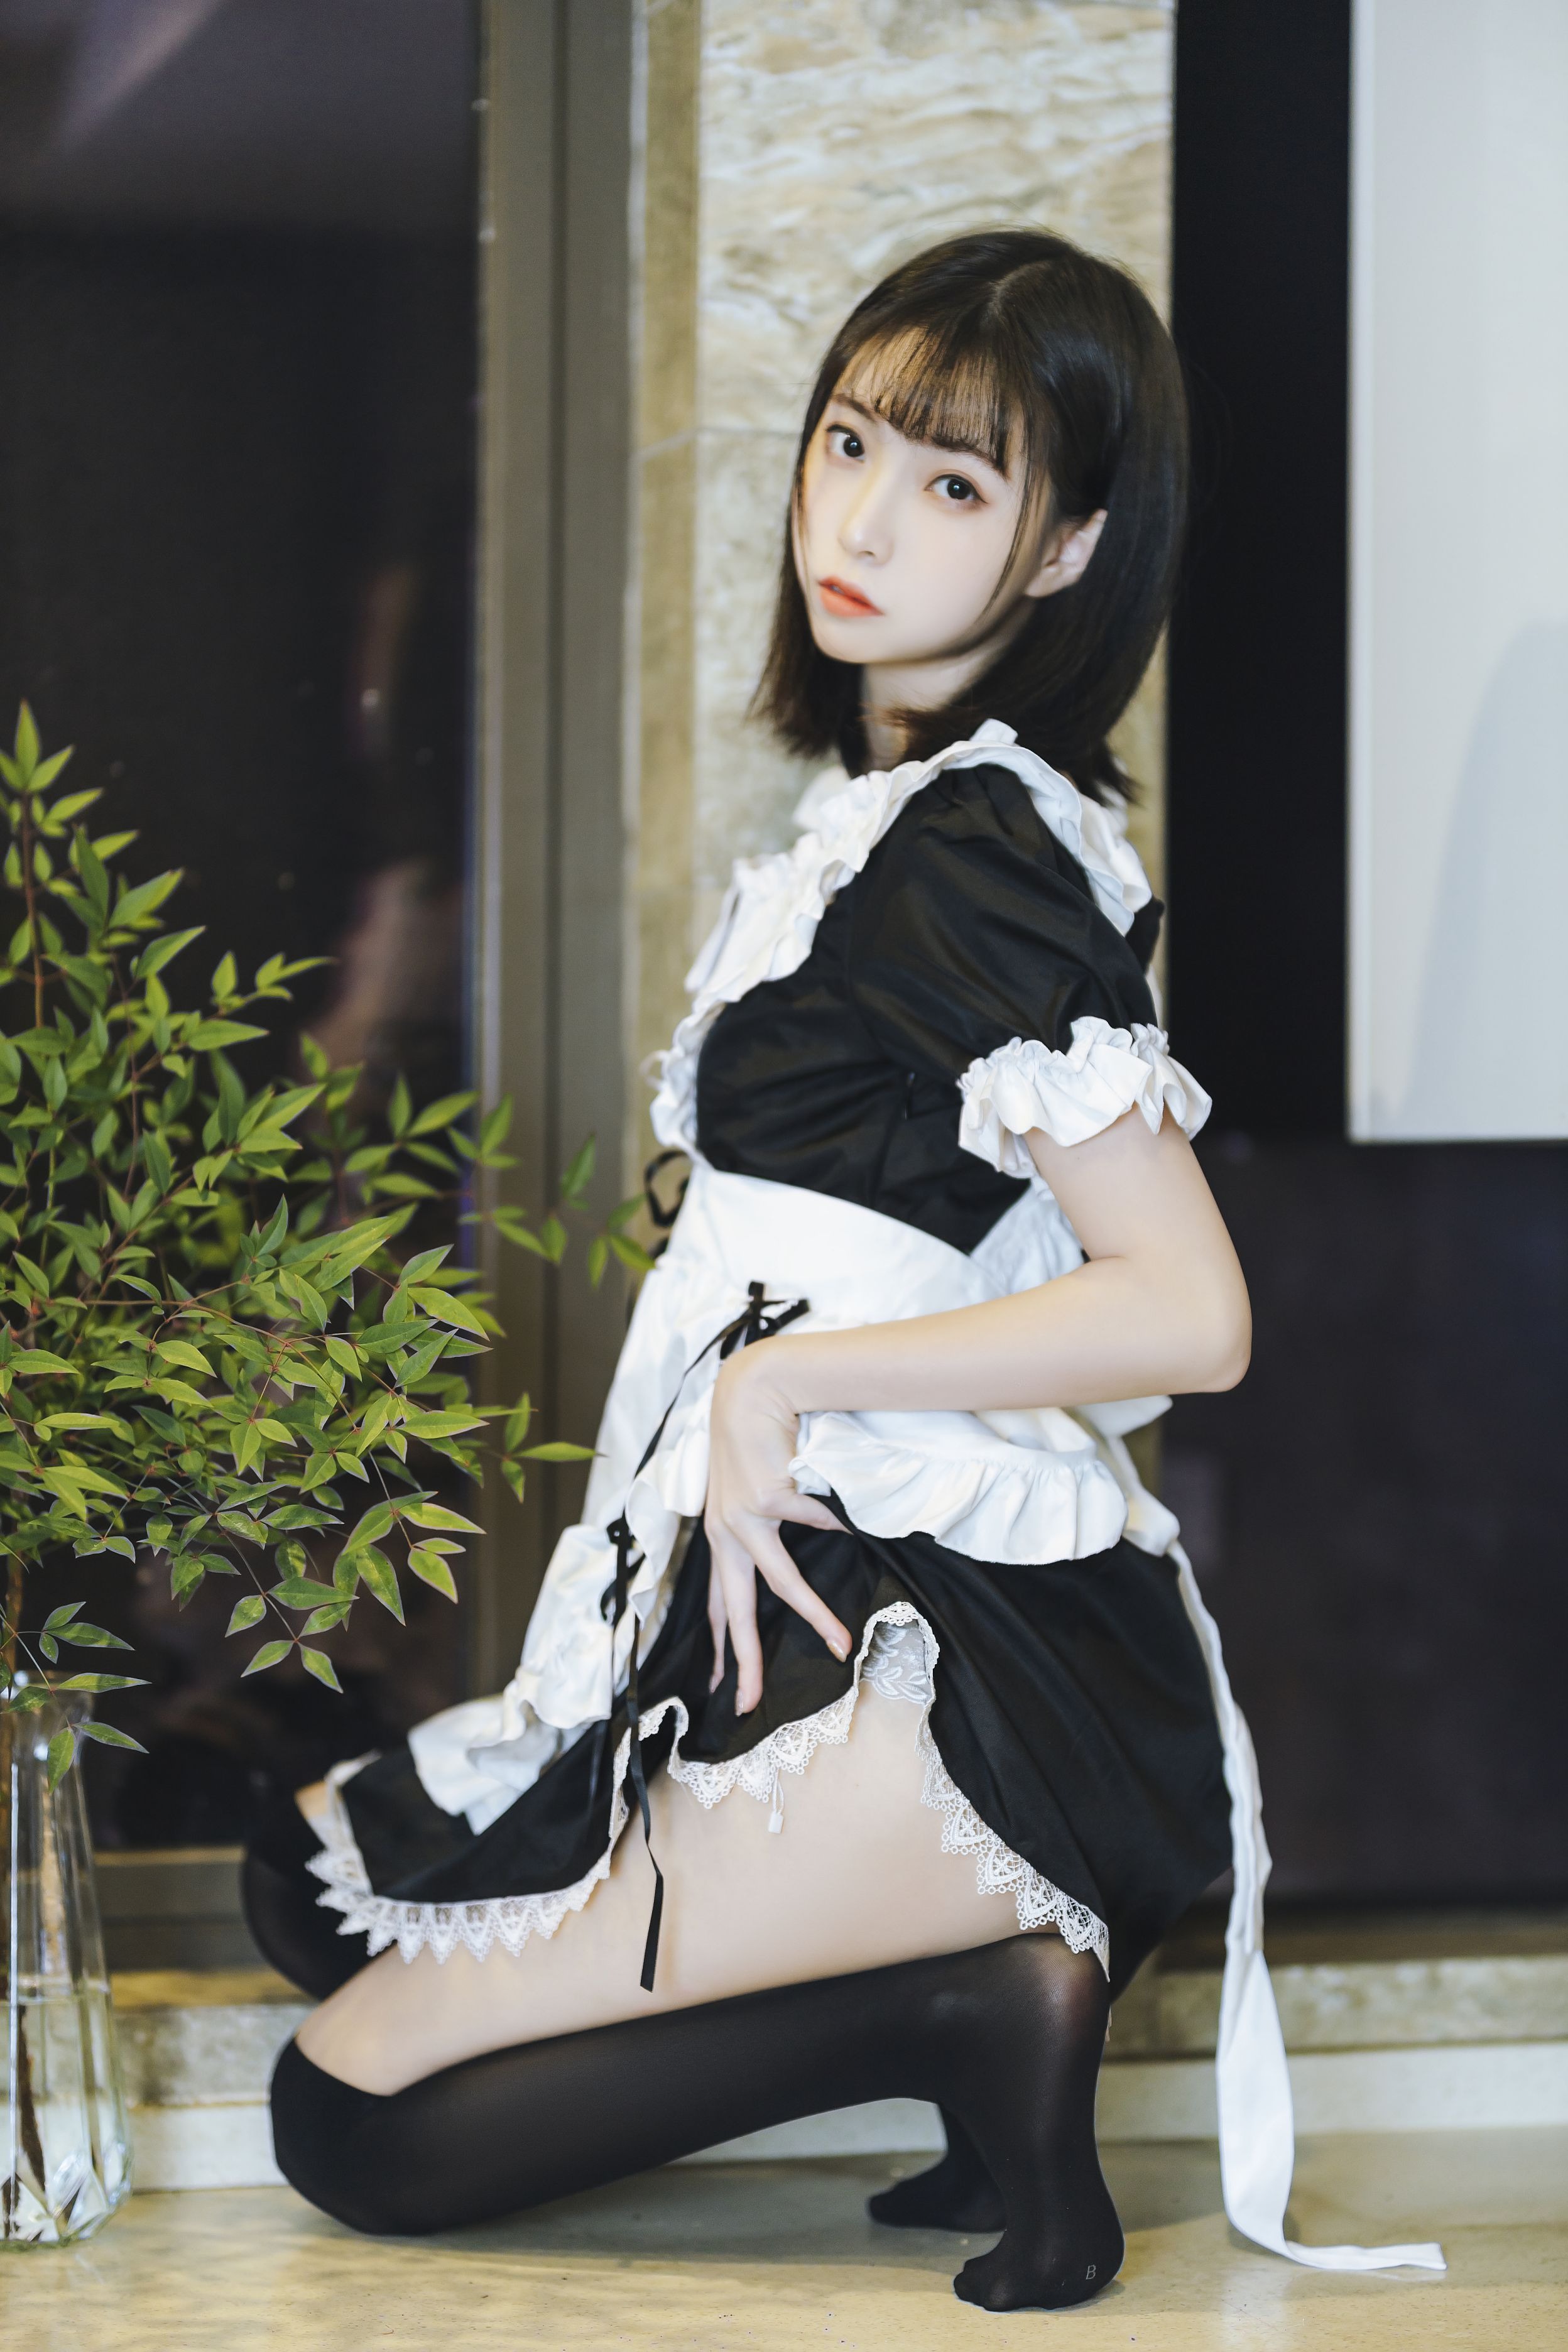 许岚LAN 短裙女仆(39)